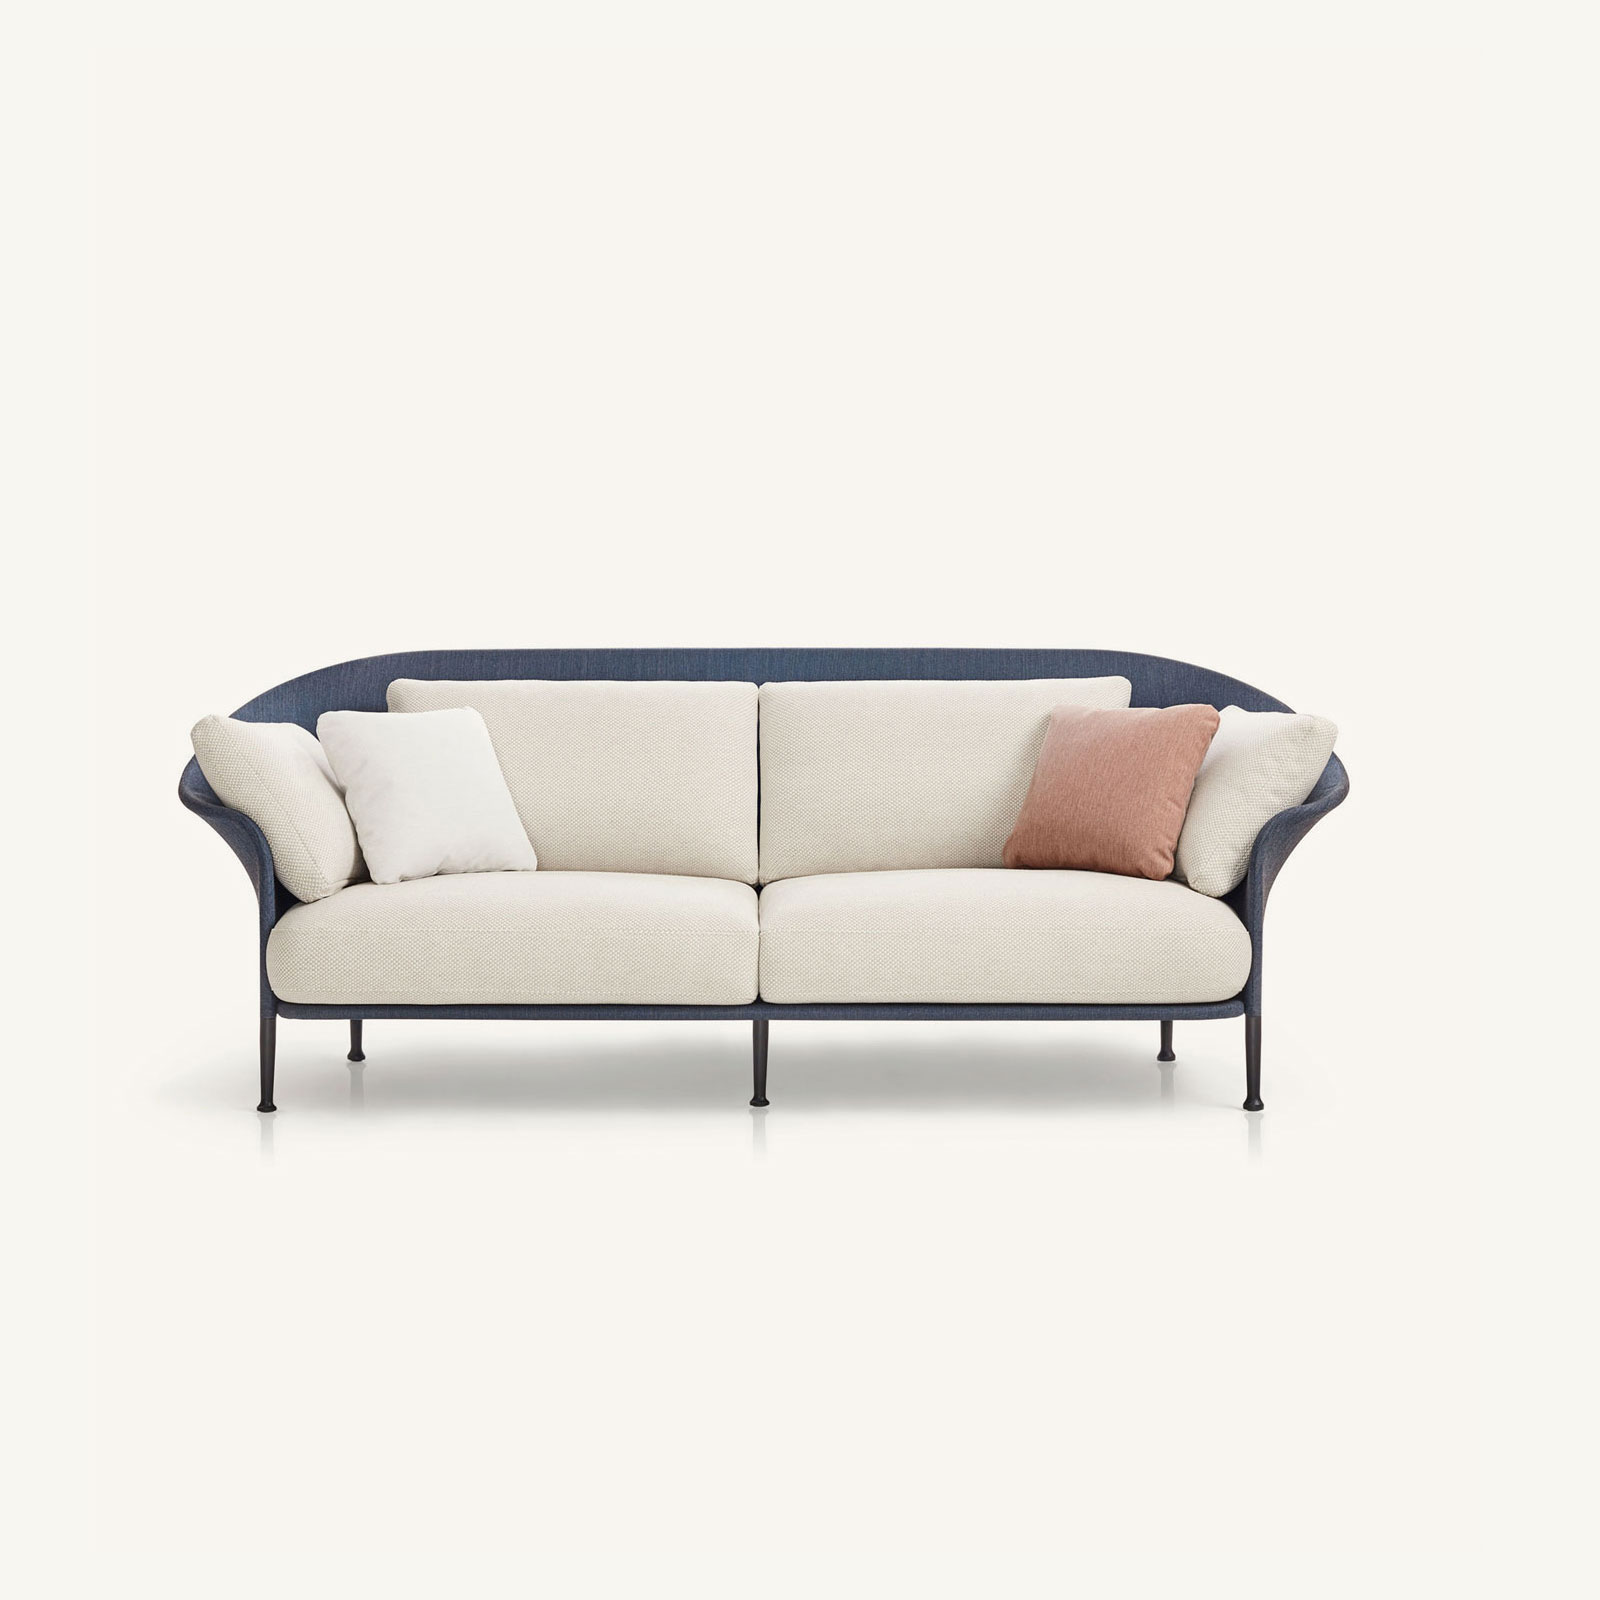 muebles de exterior - sofás - sofá liz